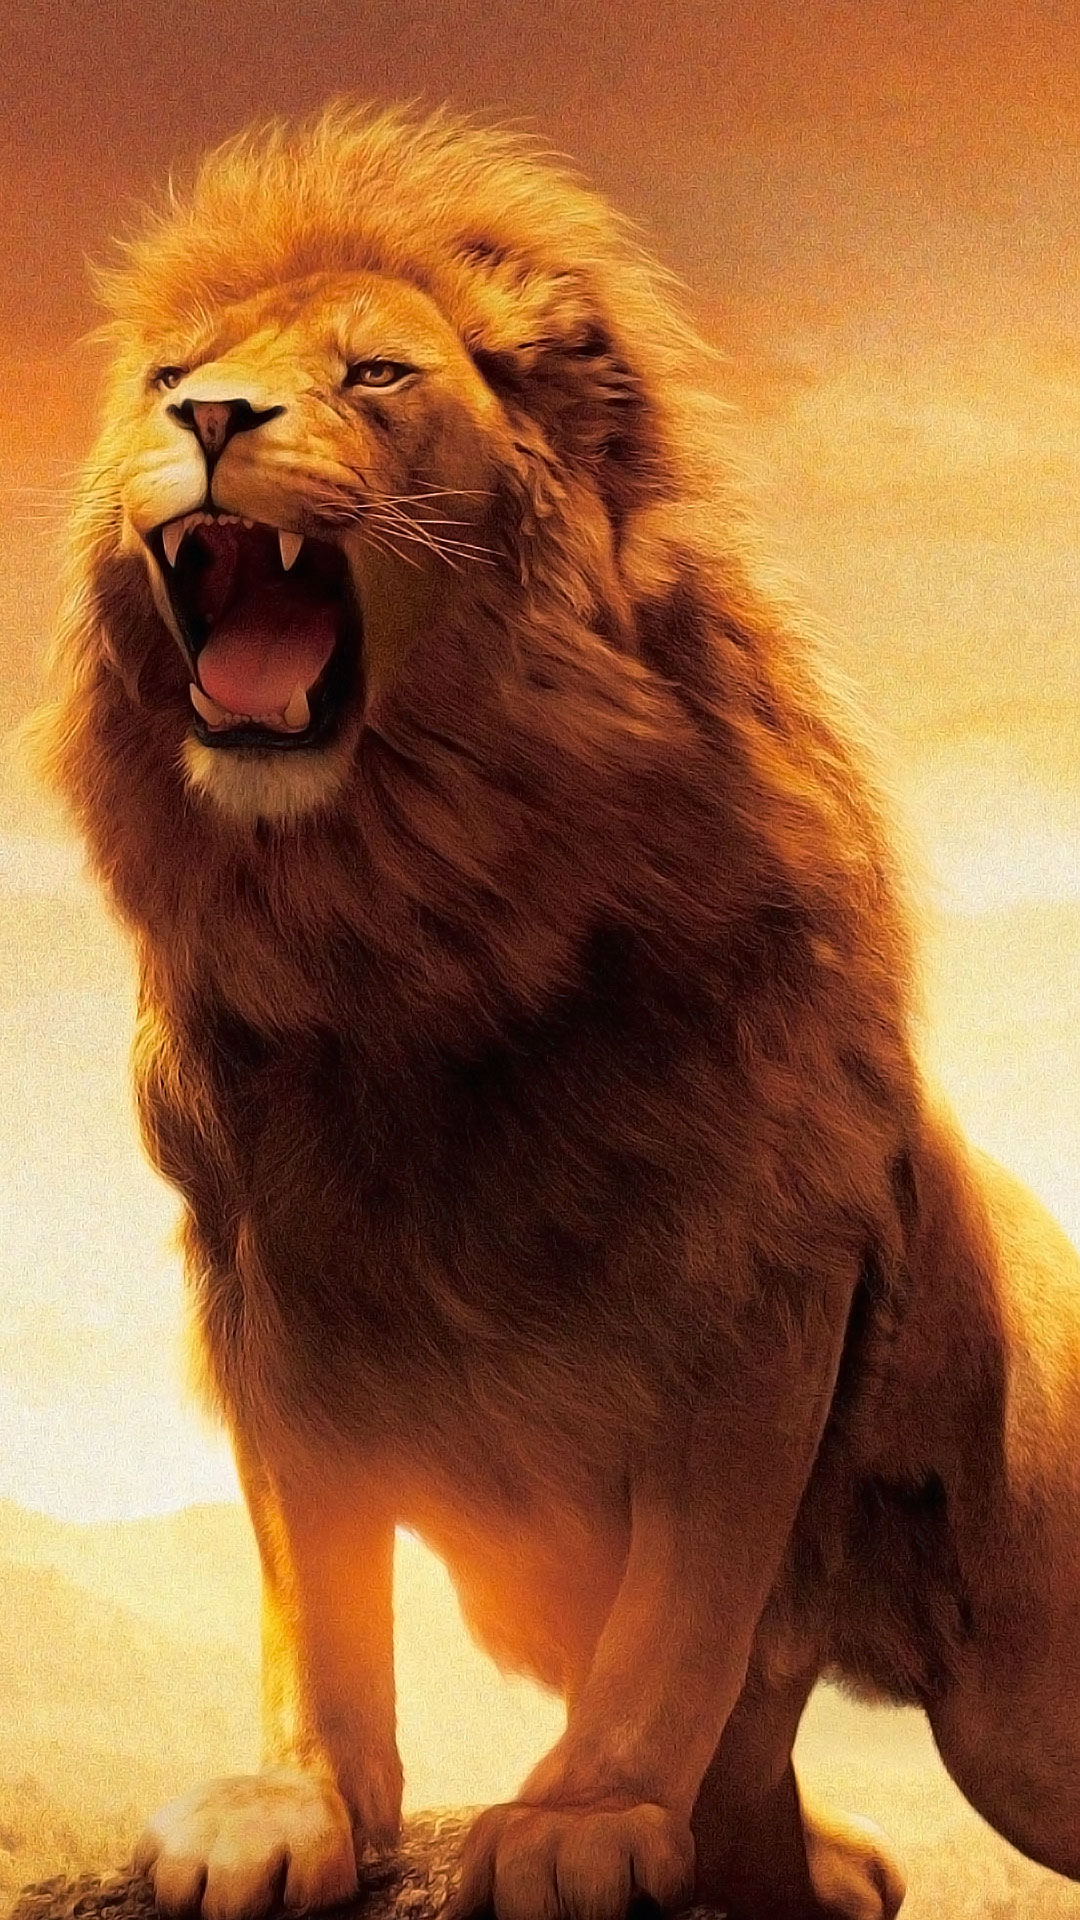 Lion Roaring Wallpaper